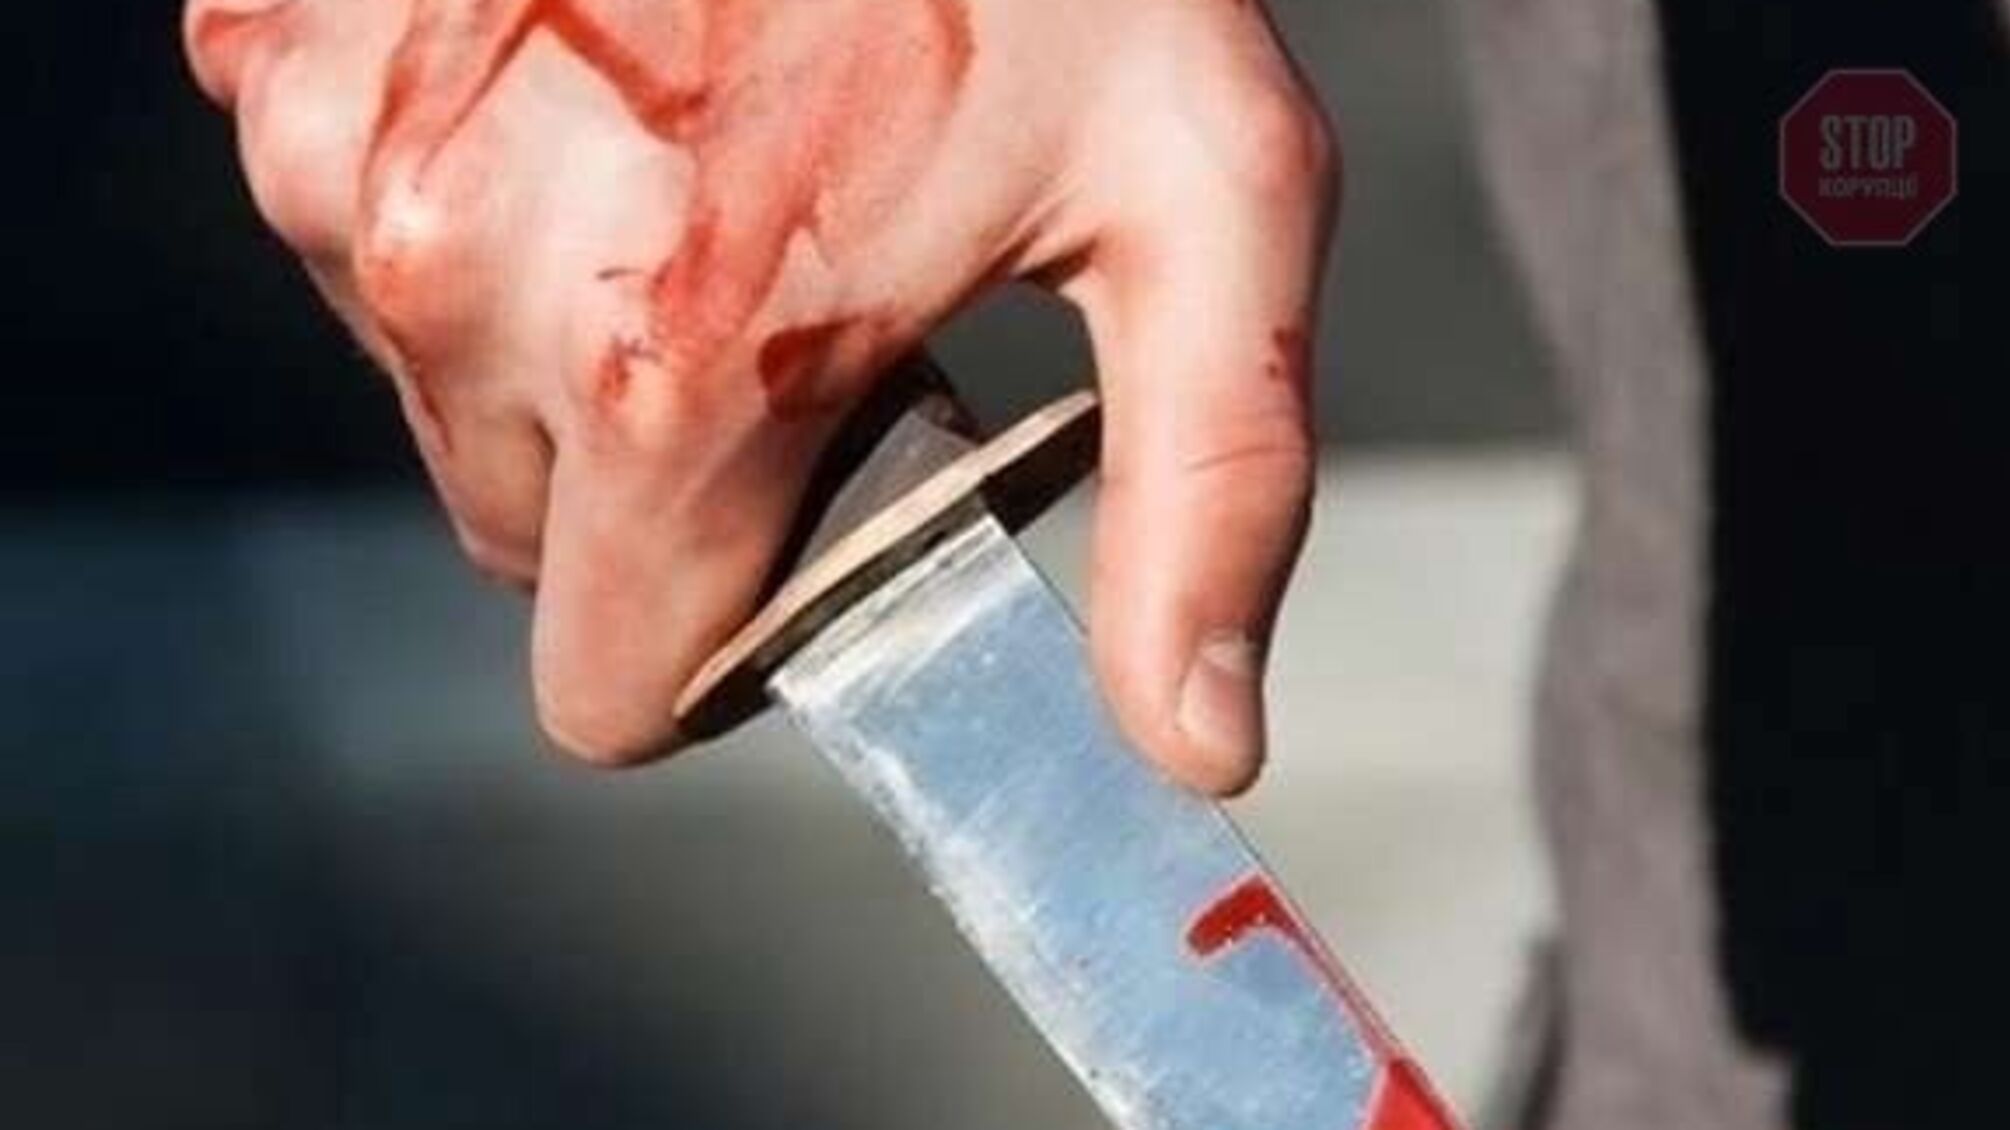 У Запорізькій області п'яний чоловік розмахував ножем у кафе, є поранені (фото)